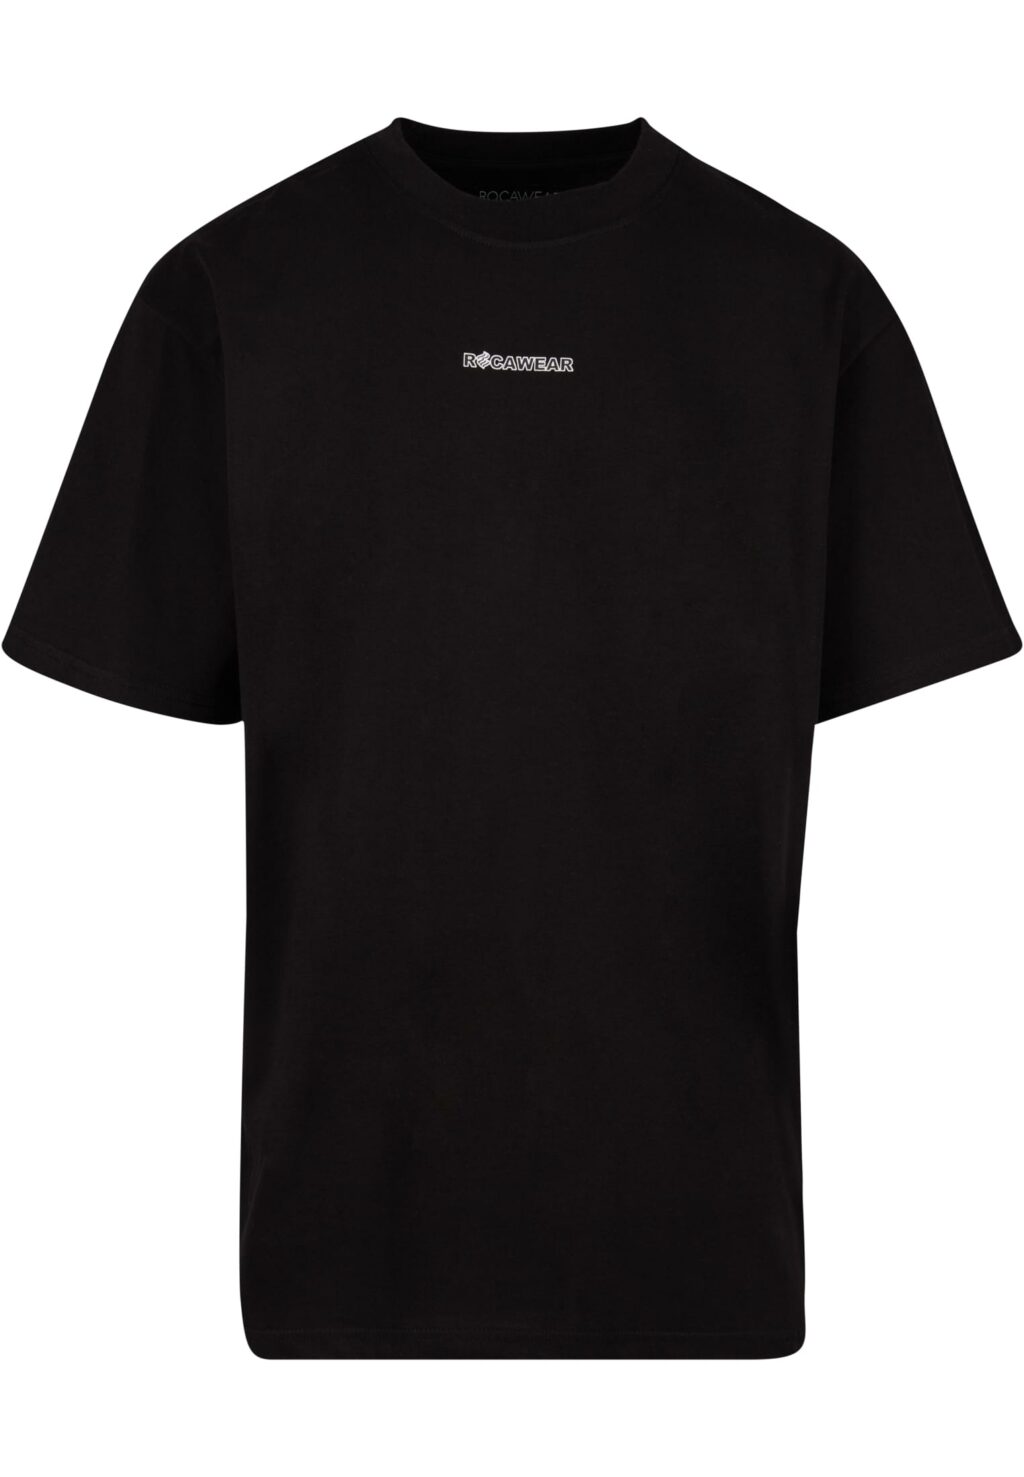 Rocawear Tshirt Chill black RWTS097